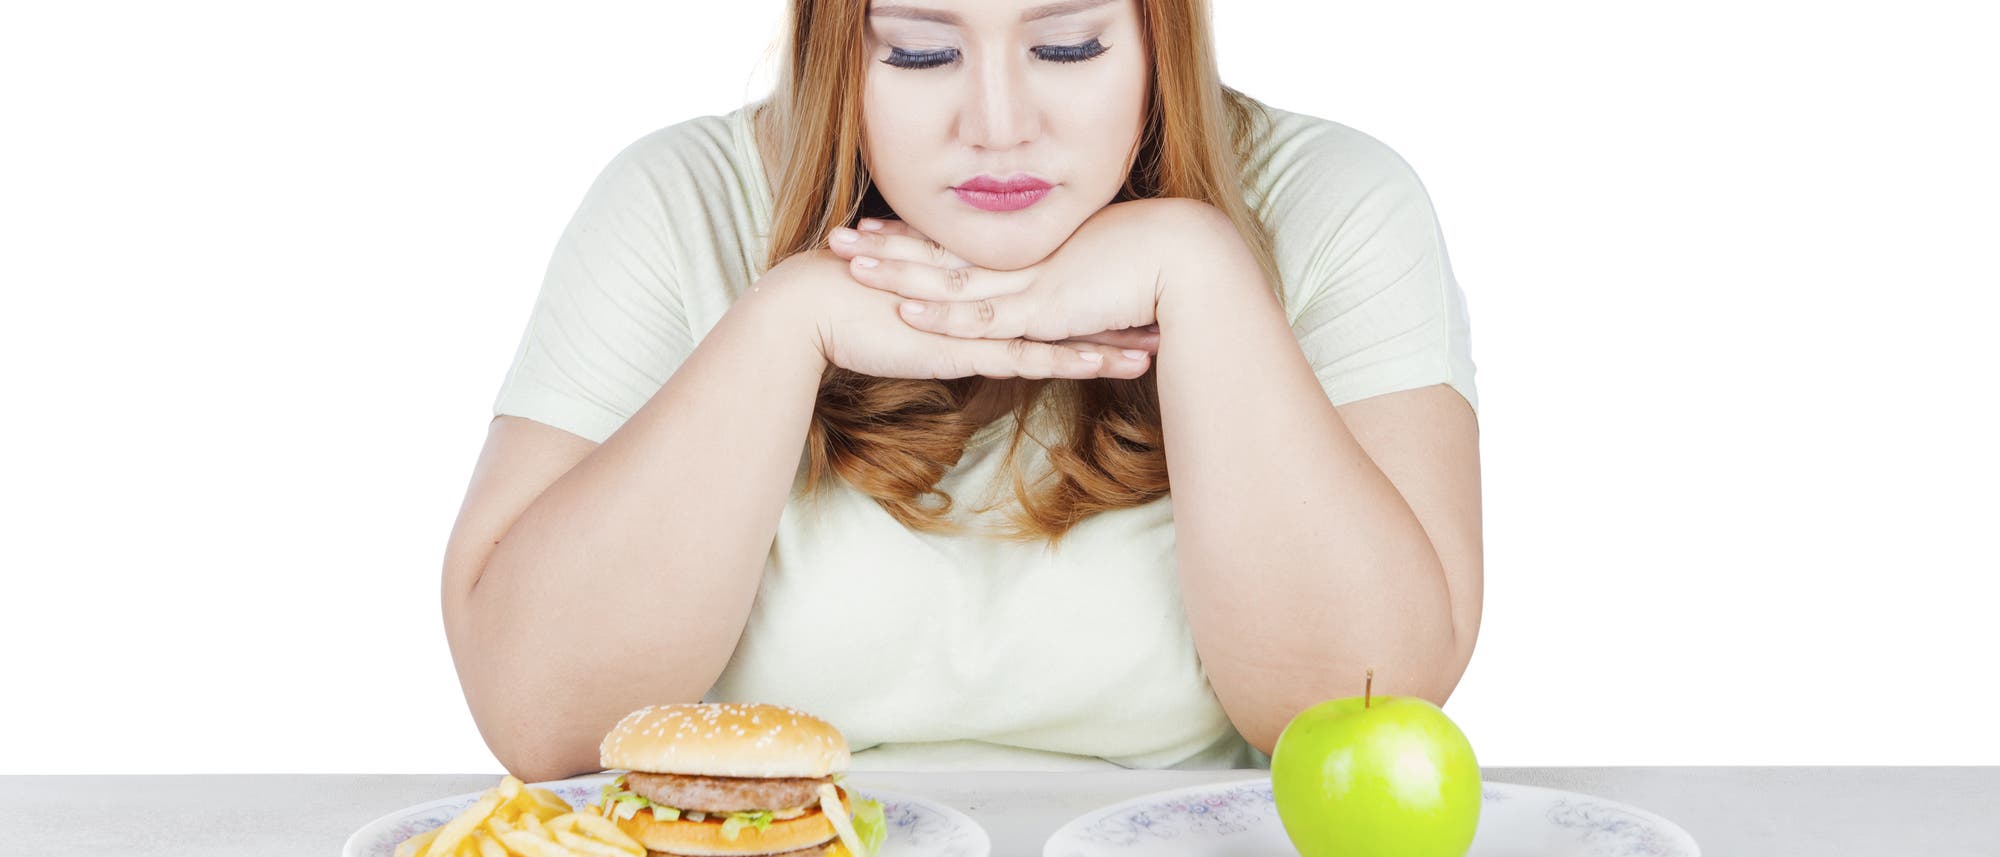 Eine Frau sitzt vor einem Burger und einem Apfel, sie muss sich scheinbar entscheiden